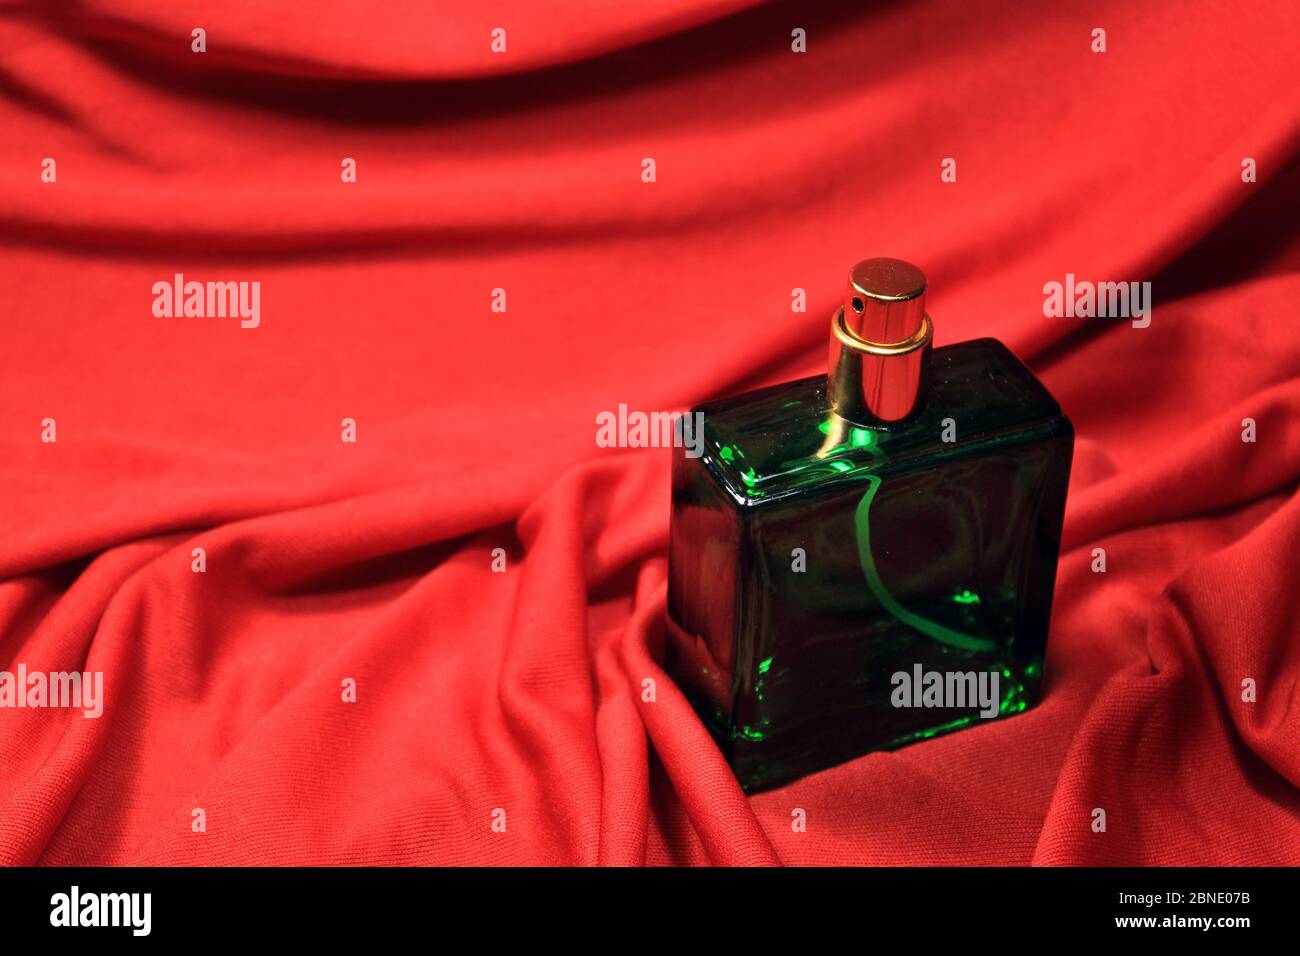 Flacon de parfum de couleur verte avec accessoires femelles isolés sur fond rouge. Banque D'Images